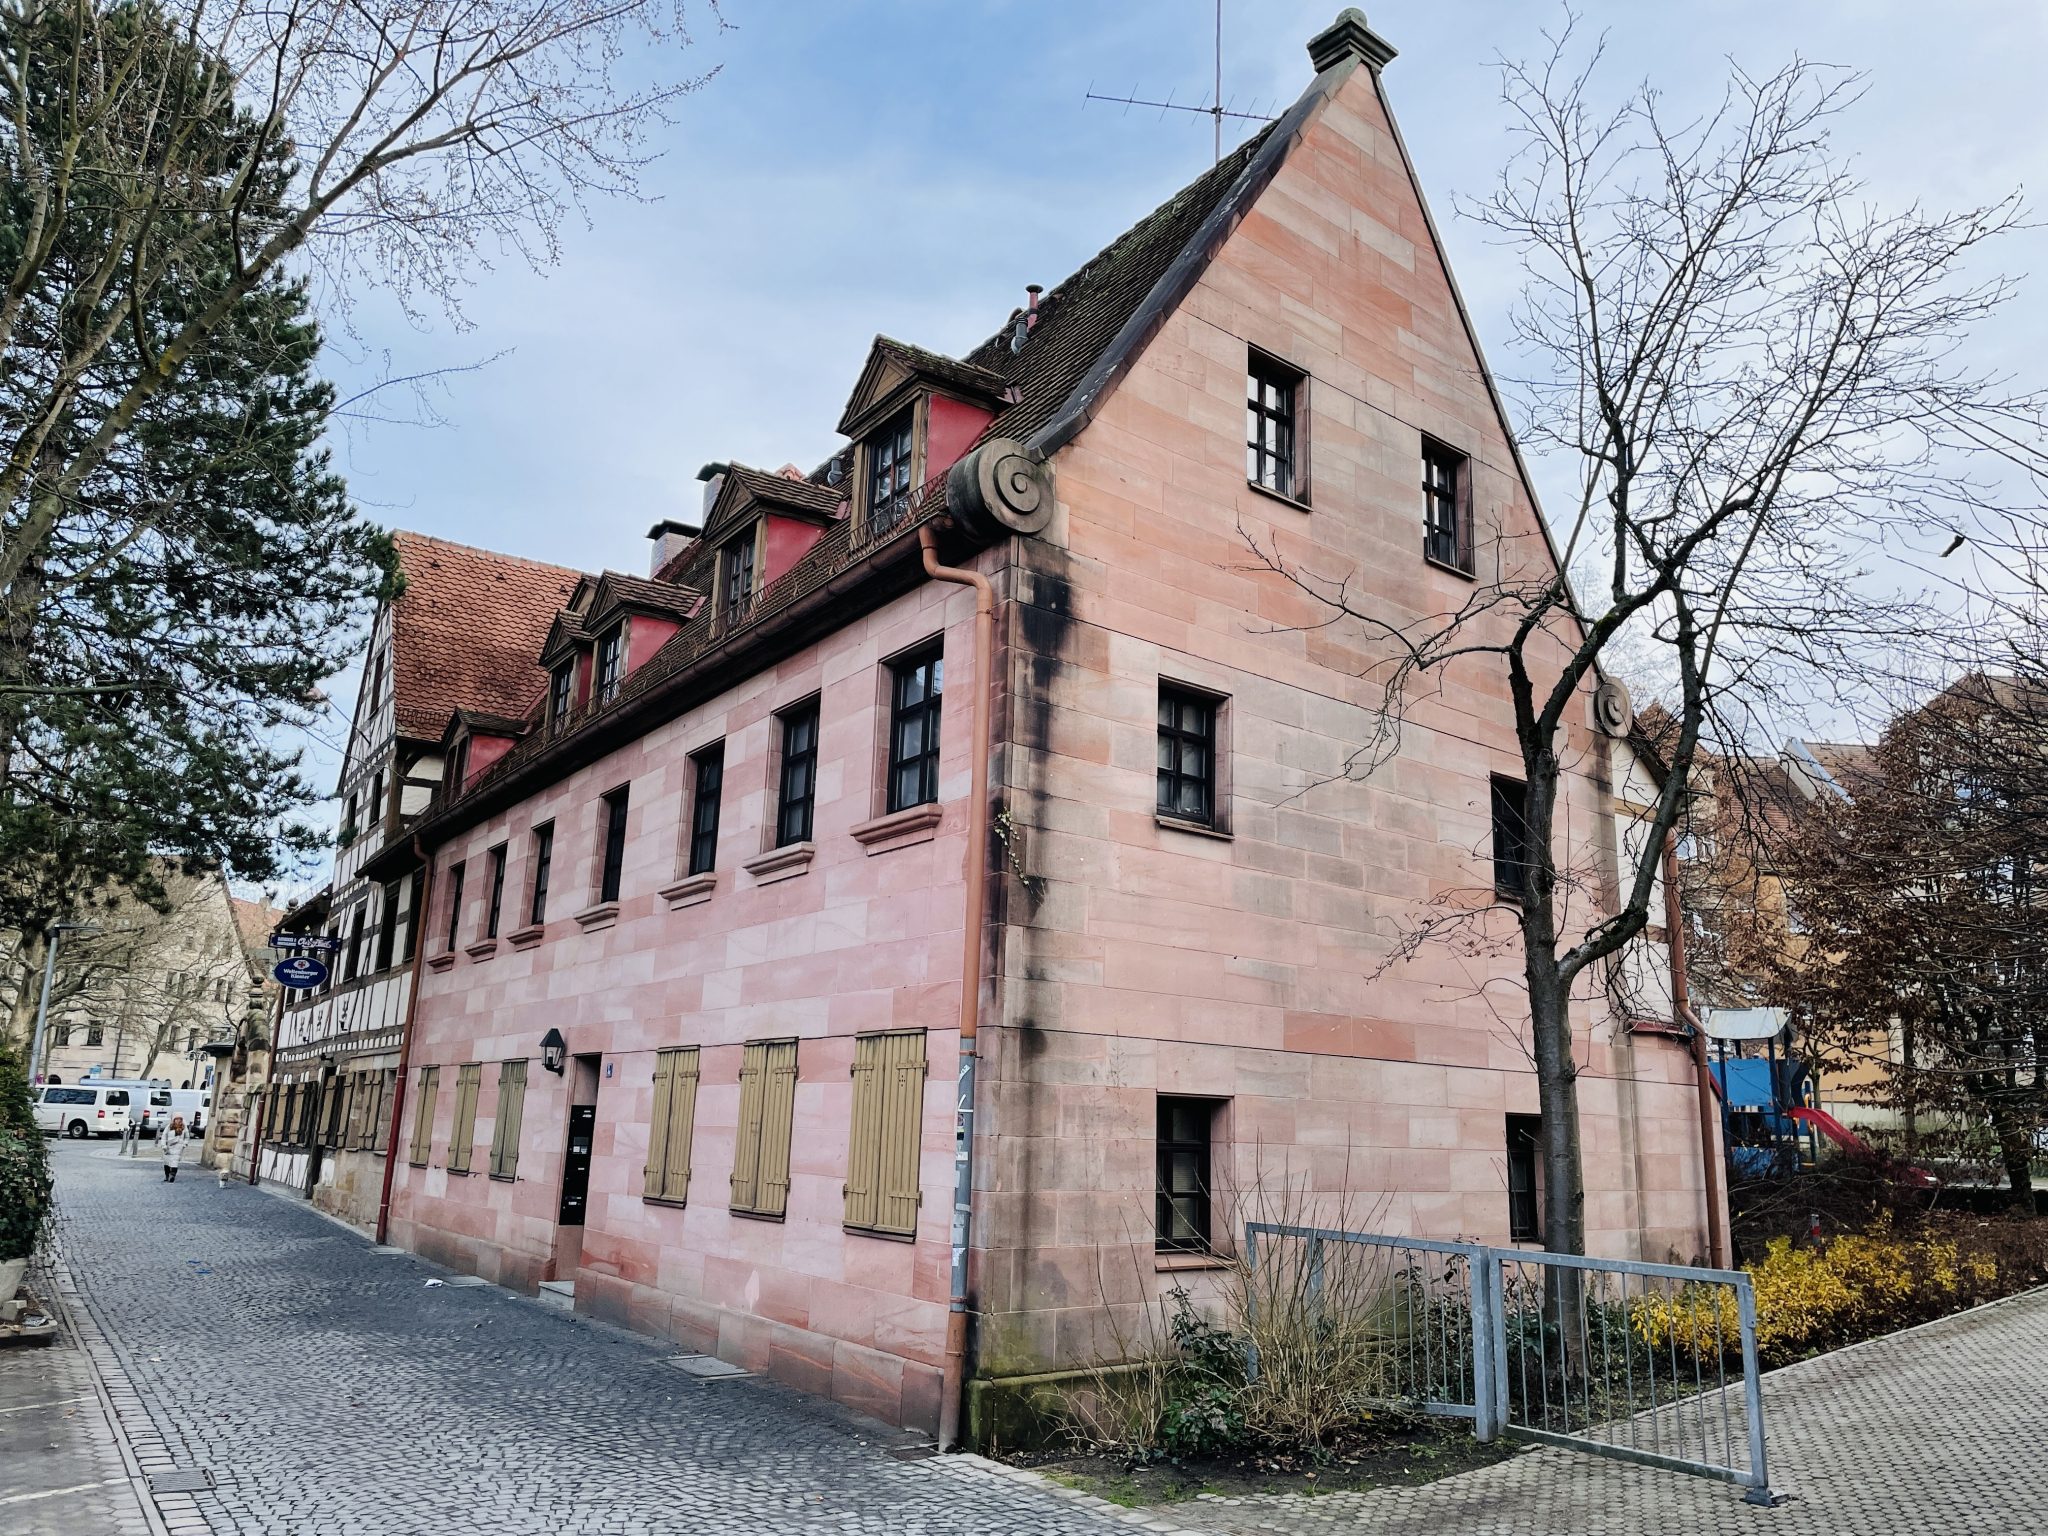 Immobilienangebot - Fürth - Alle - Schönes Mehrfamilienhaus mit Gewerbe-Einheit. 
Mit Mietsteigerungspotenzial.

Fürth-Zentrum/Altstadt